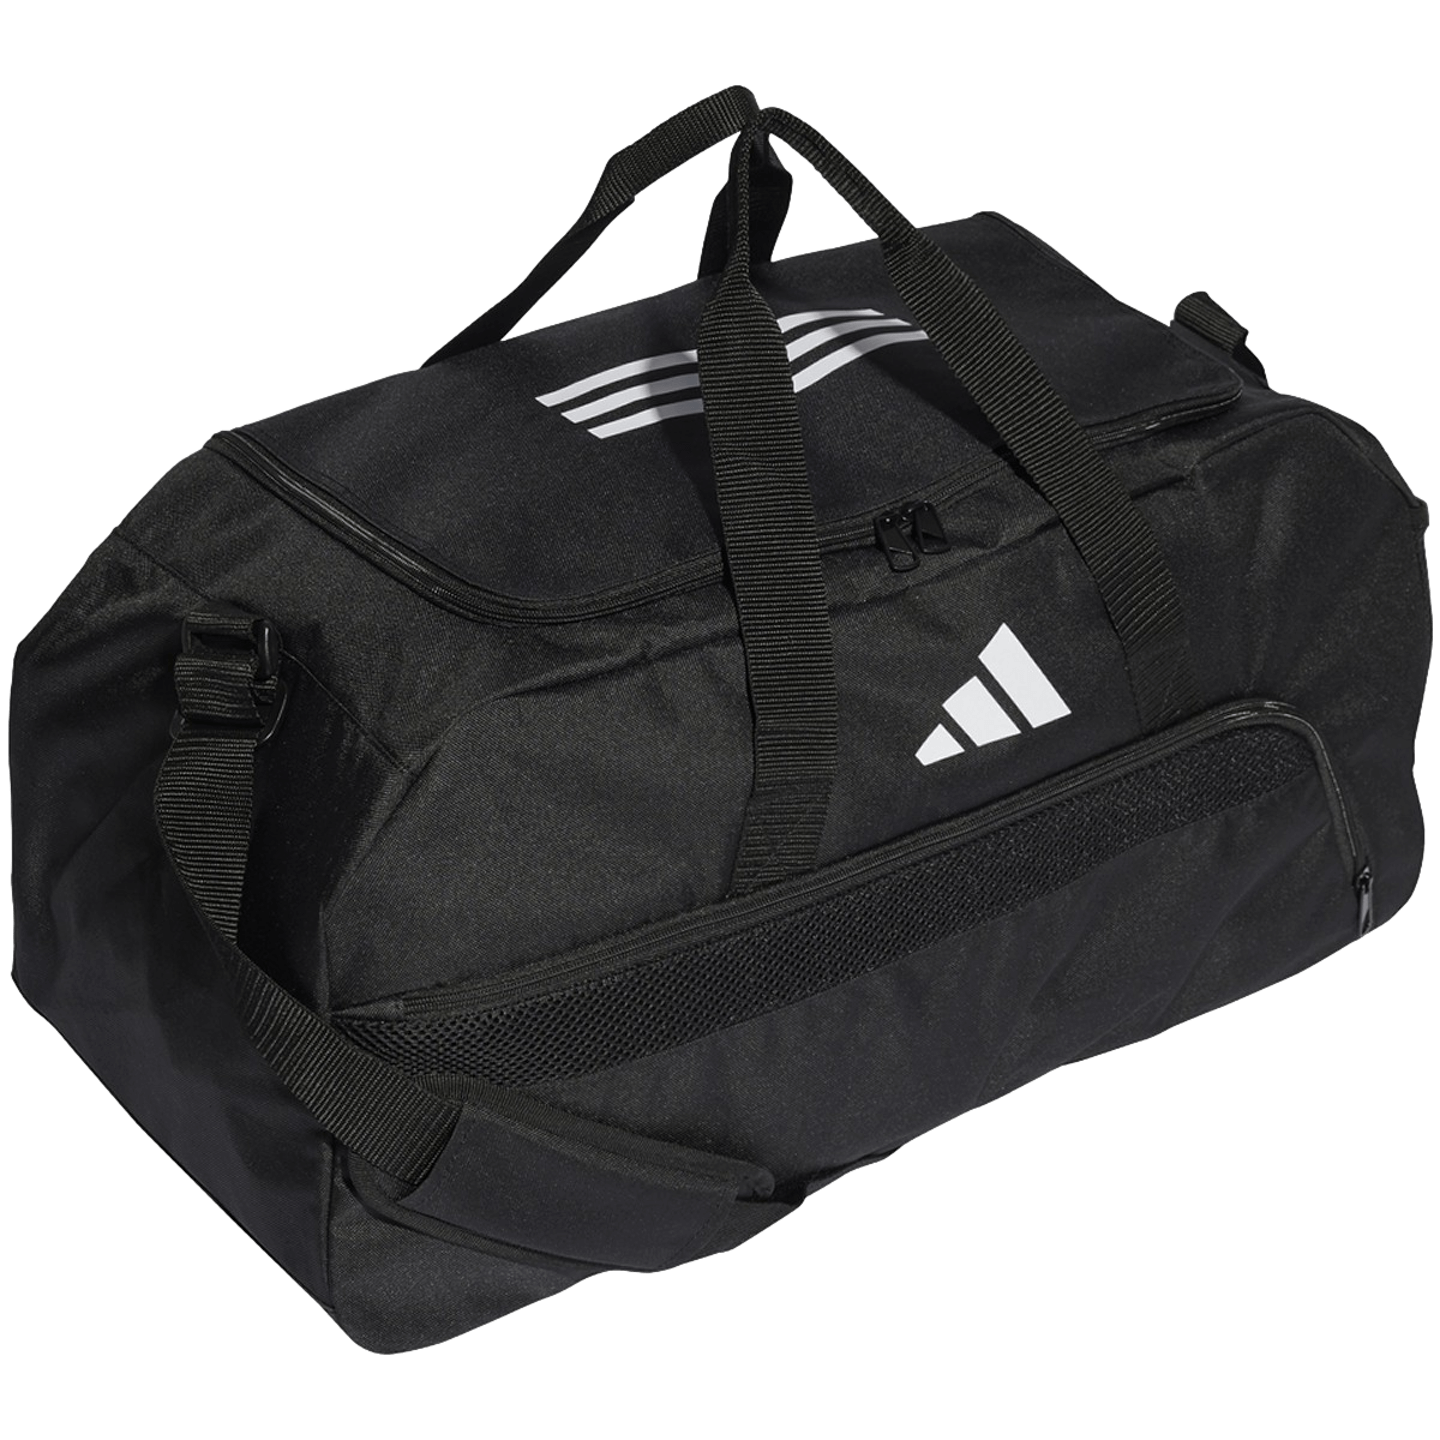 Adidas Tiro League Medium Duffel Bag